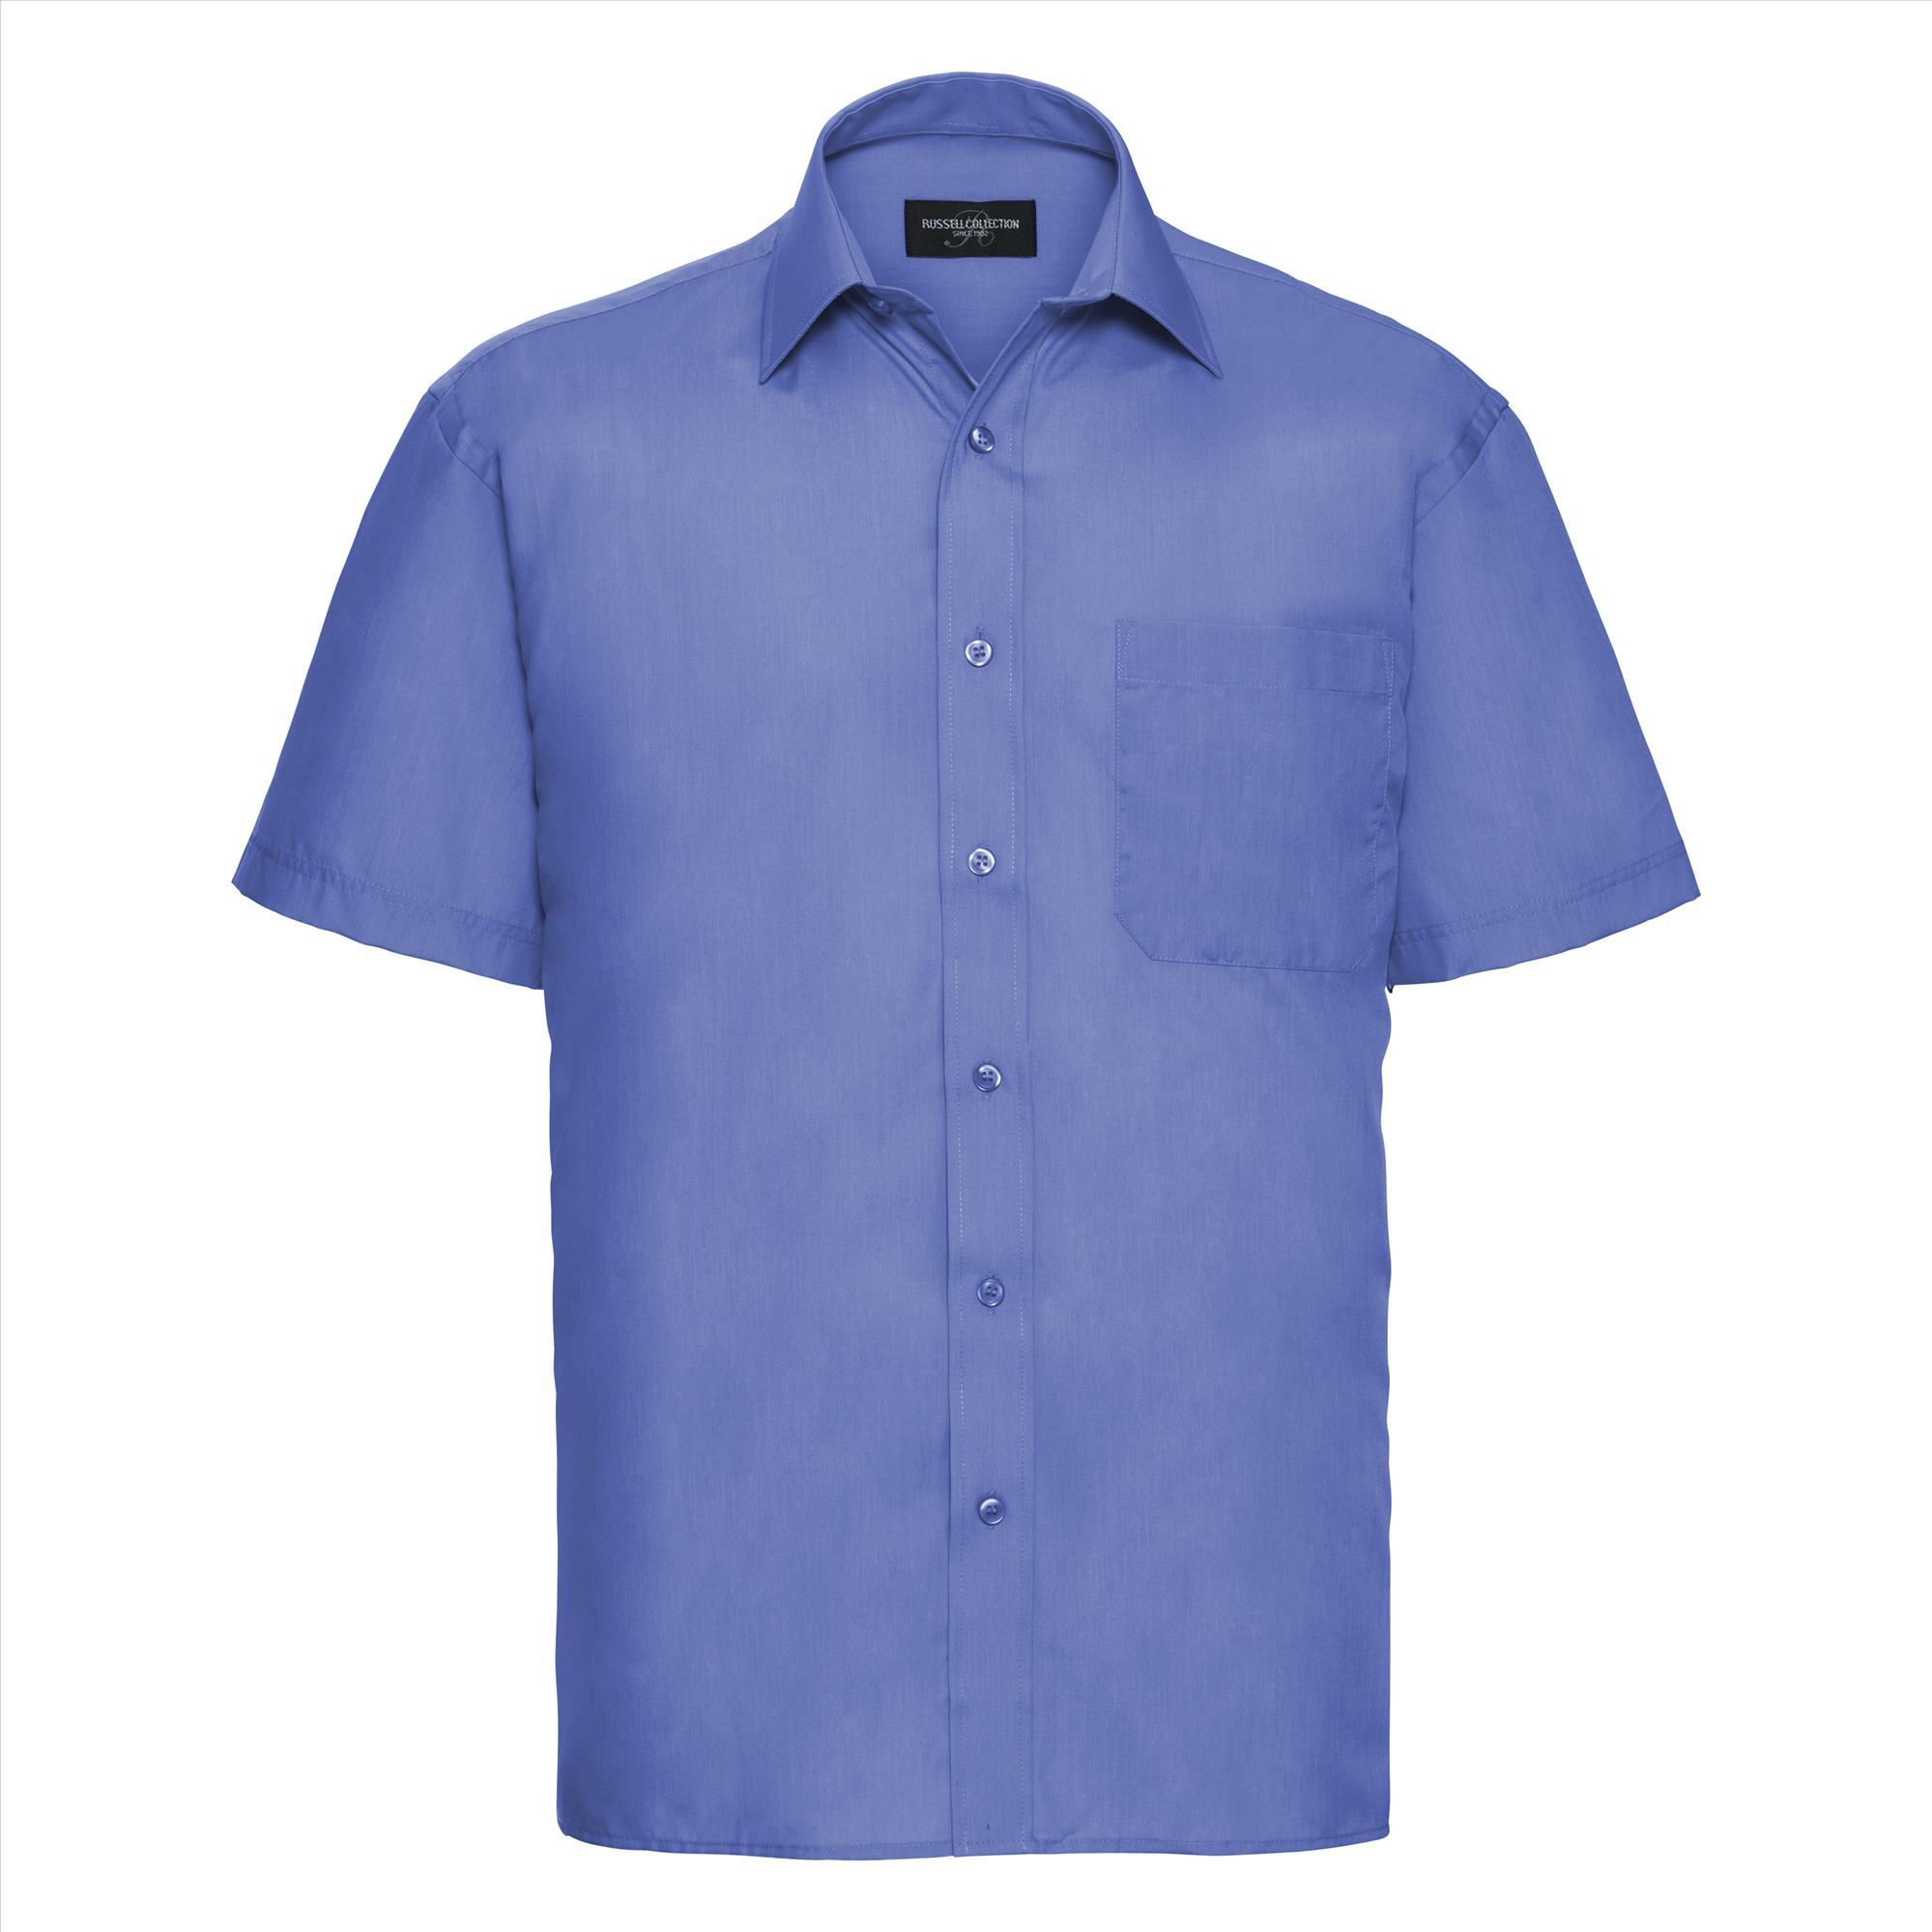 Heren overhemd corporate blue perfect voor bedrijfslogo bedrukking